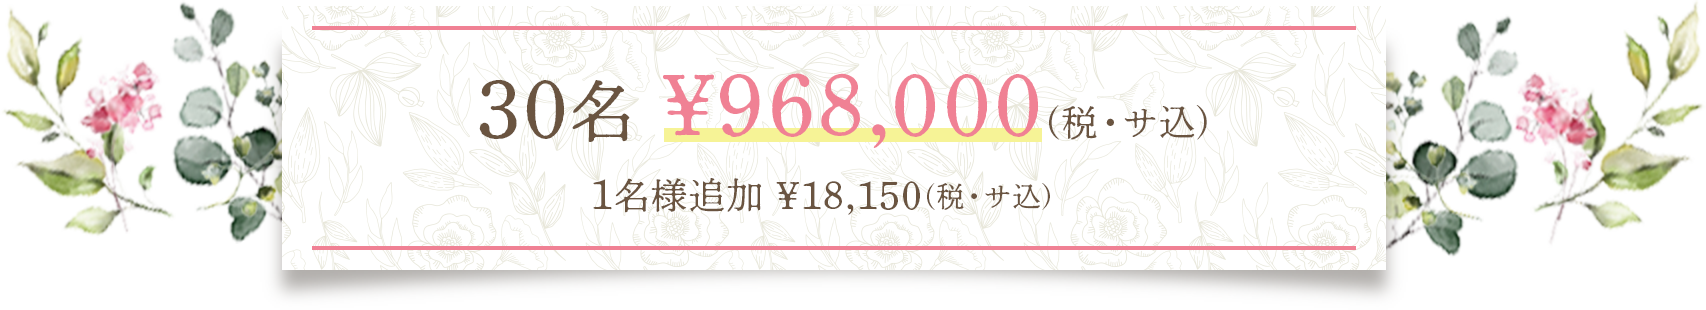 30名 ¥968,000(税・サ込) 1名様追加¥18,150(税・サ込)